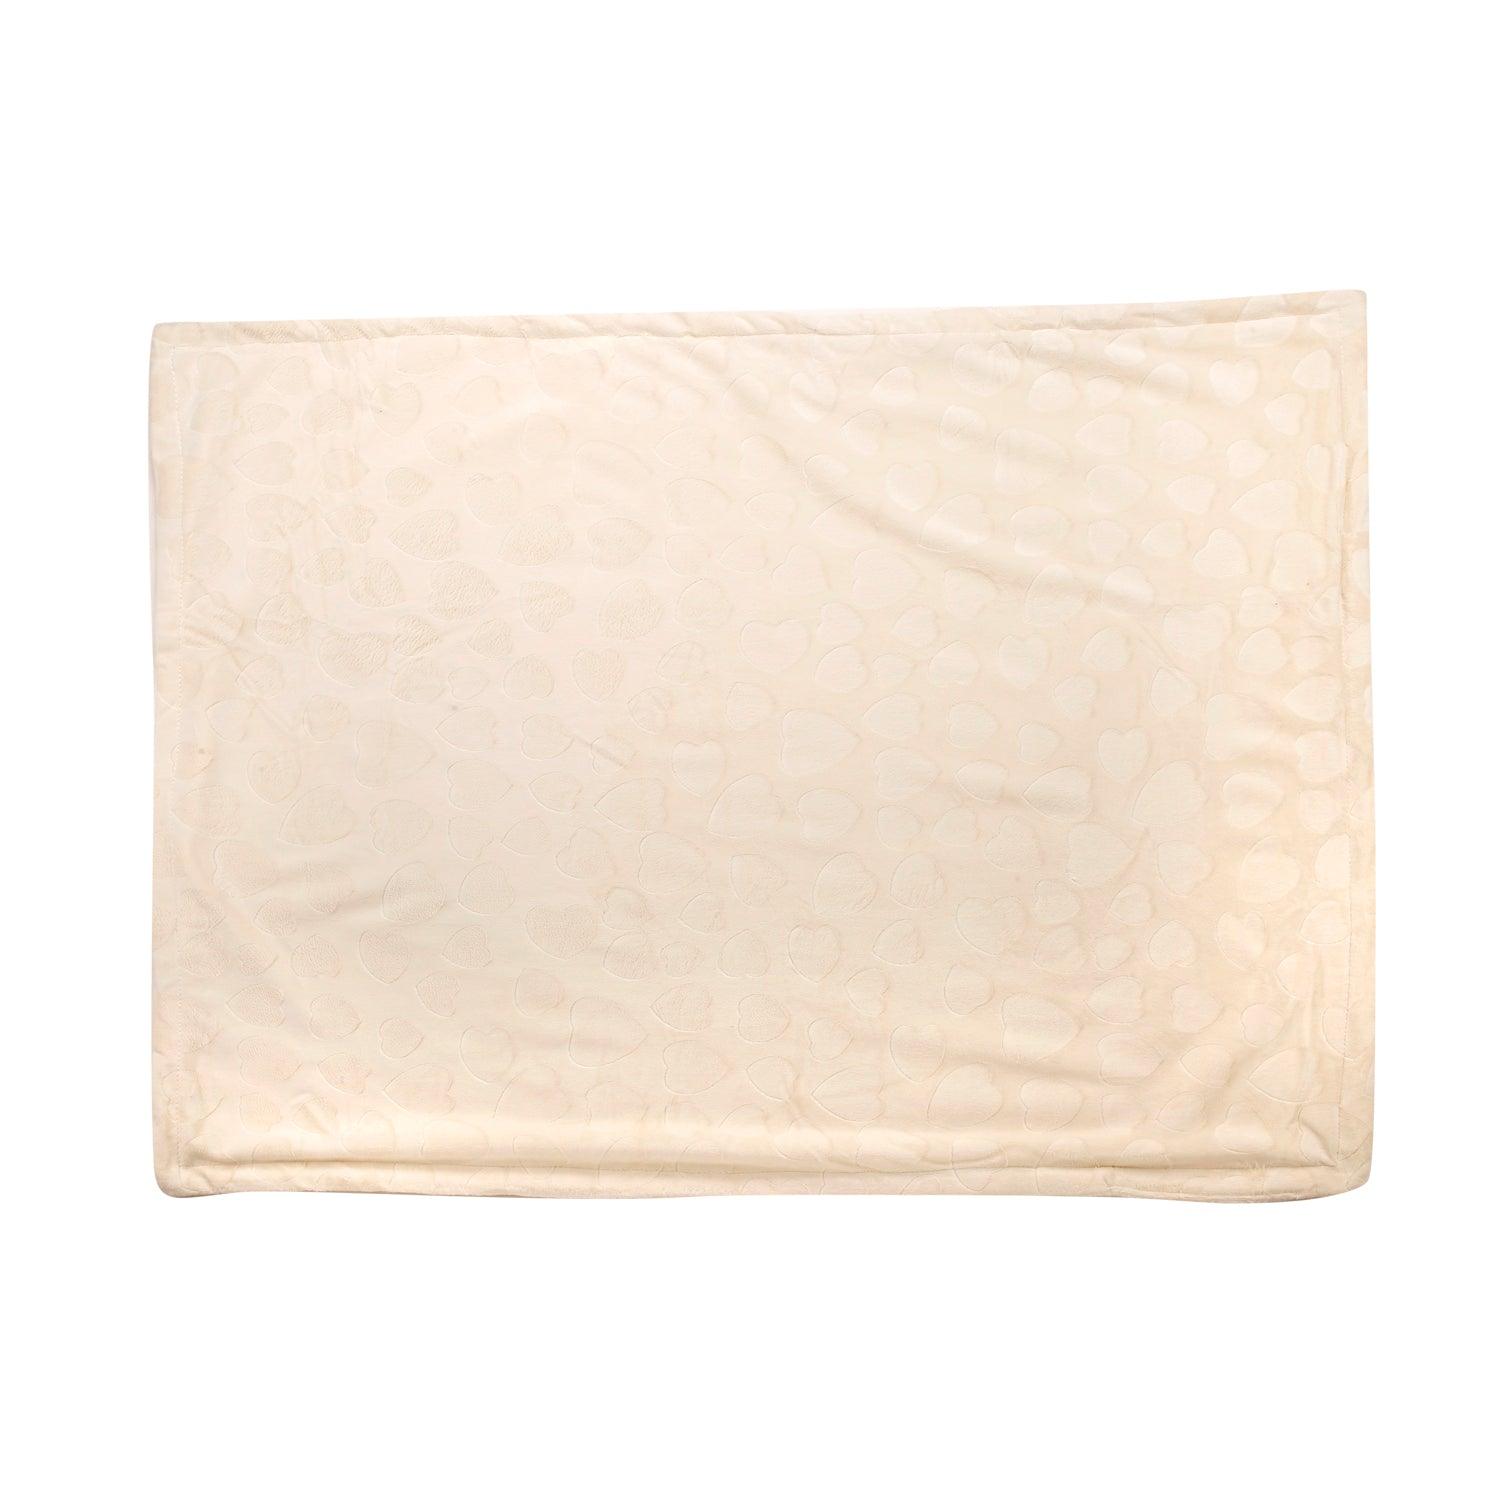 Heart Cream Textured Beige Blanket - Baby Moo